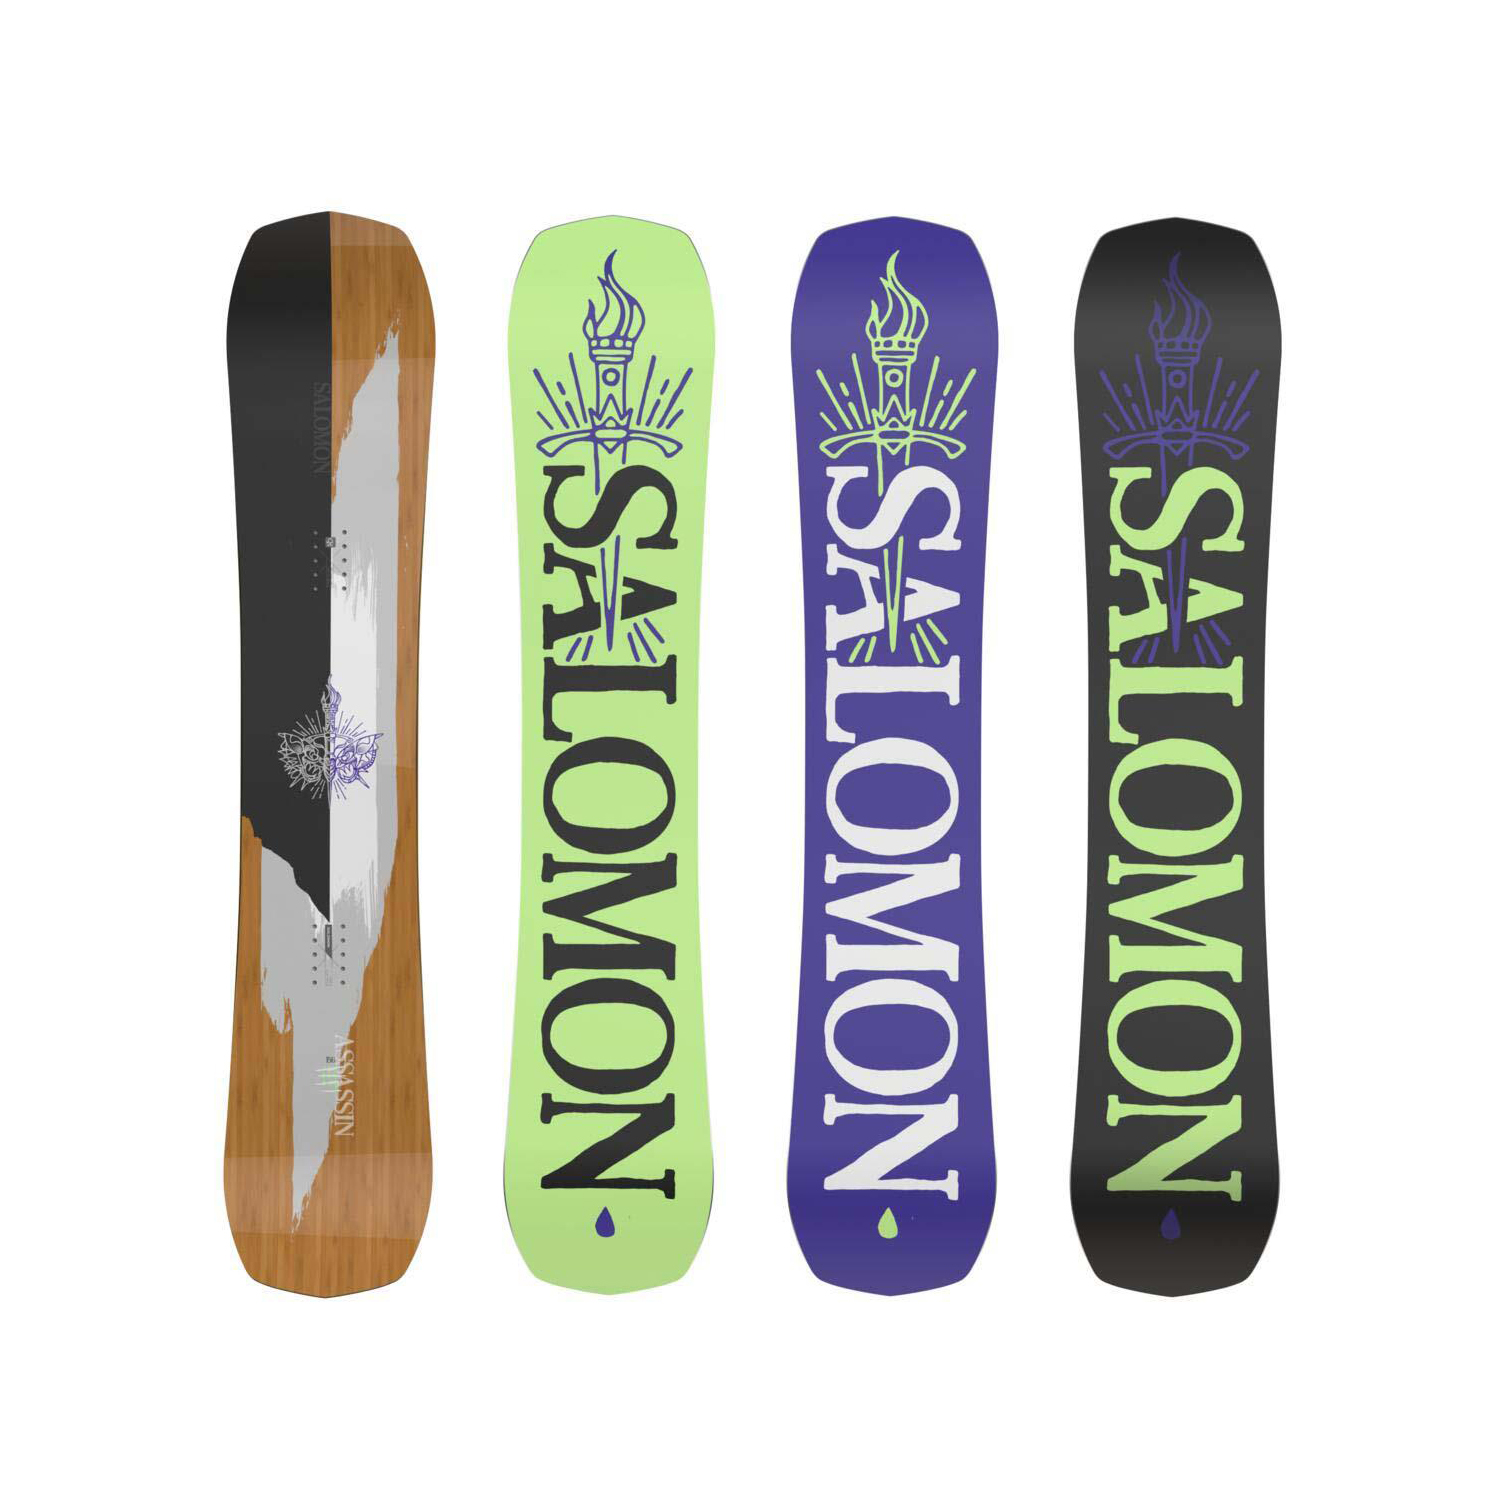 Salomon Assassin Snowboard